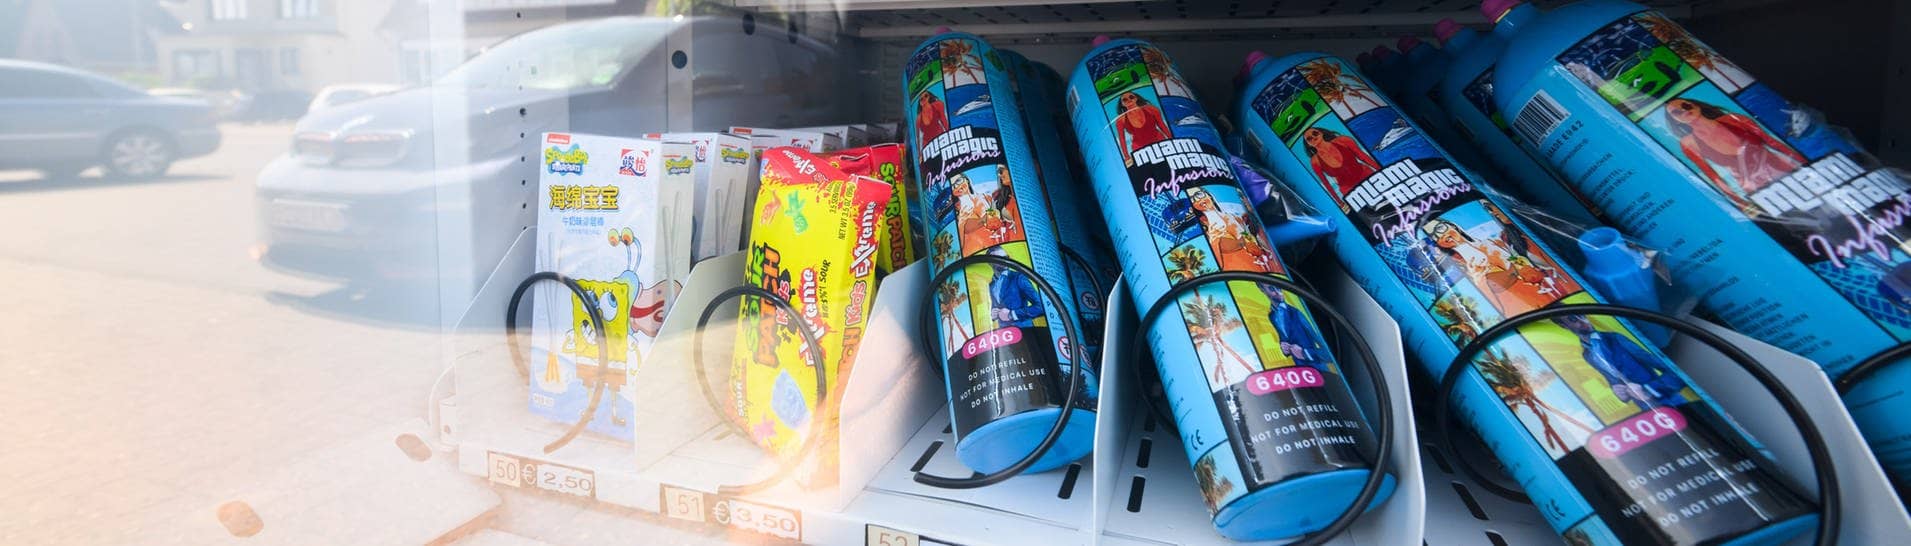 Kartuschen mit Lachgas werden in einem Automaten zum Kauf angeboten, neben Süßigkeiten.